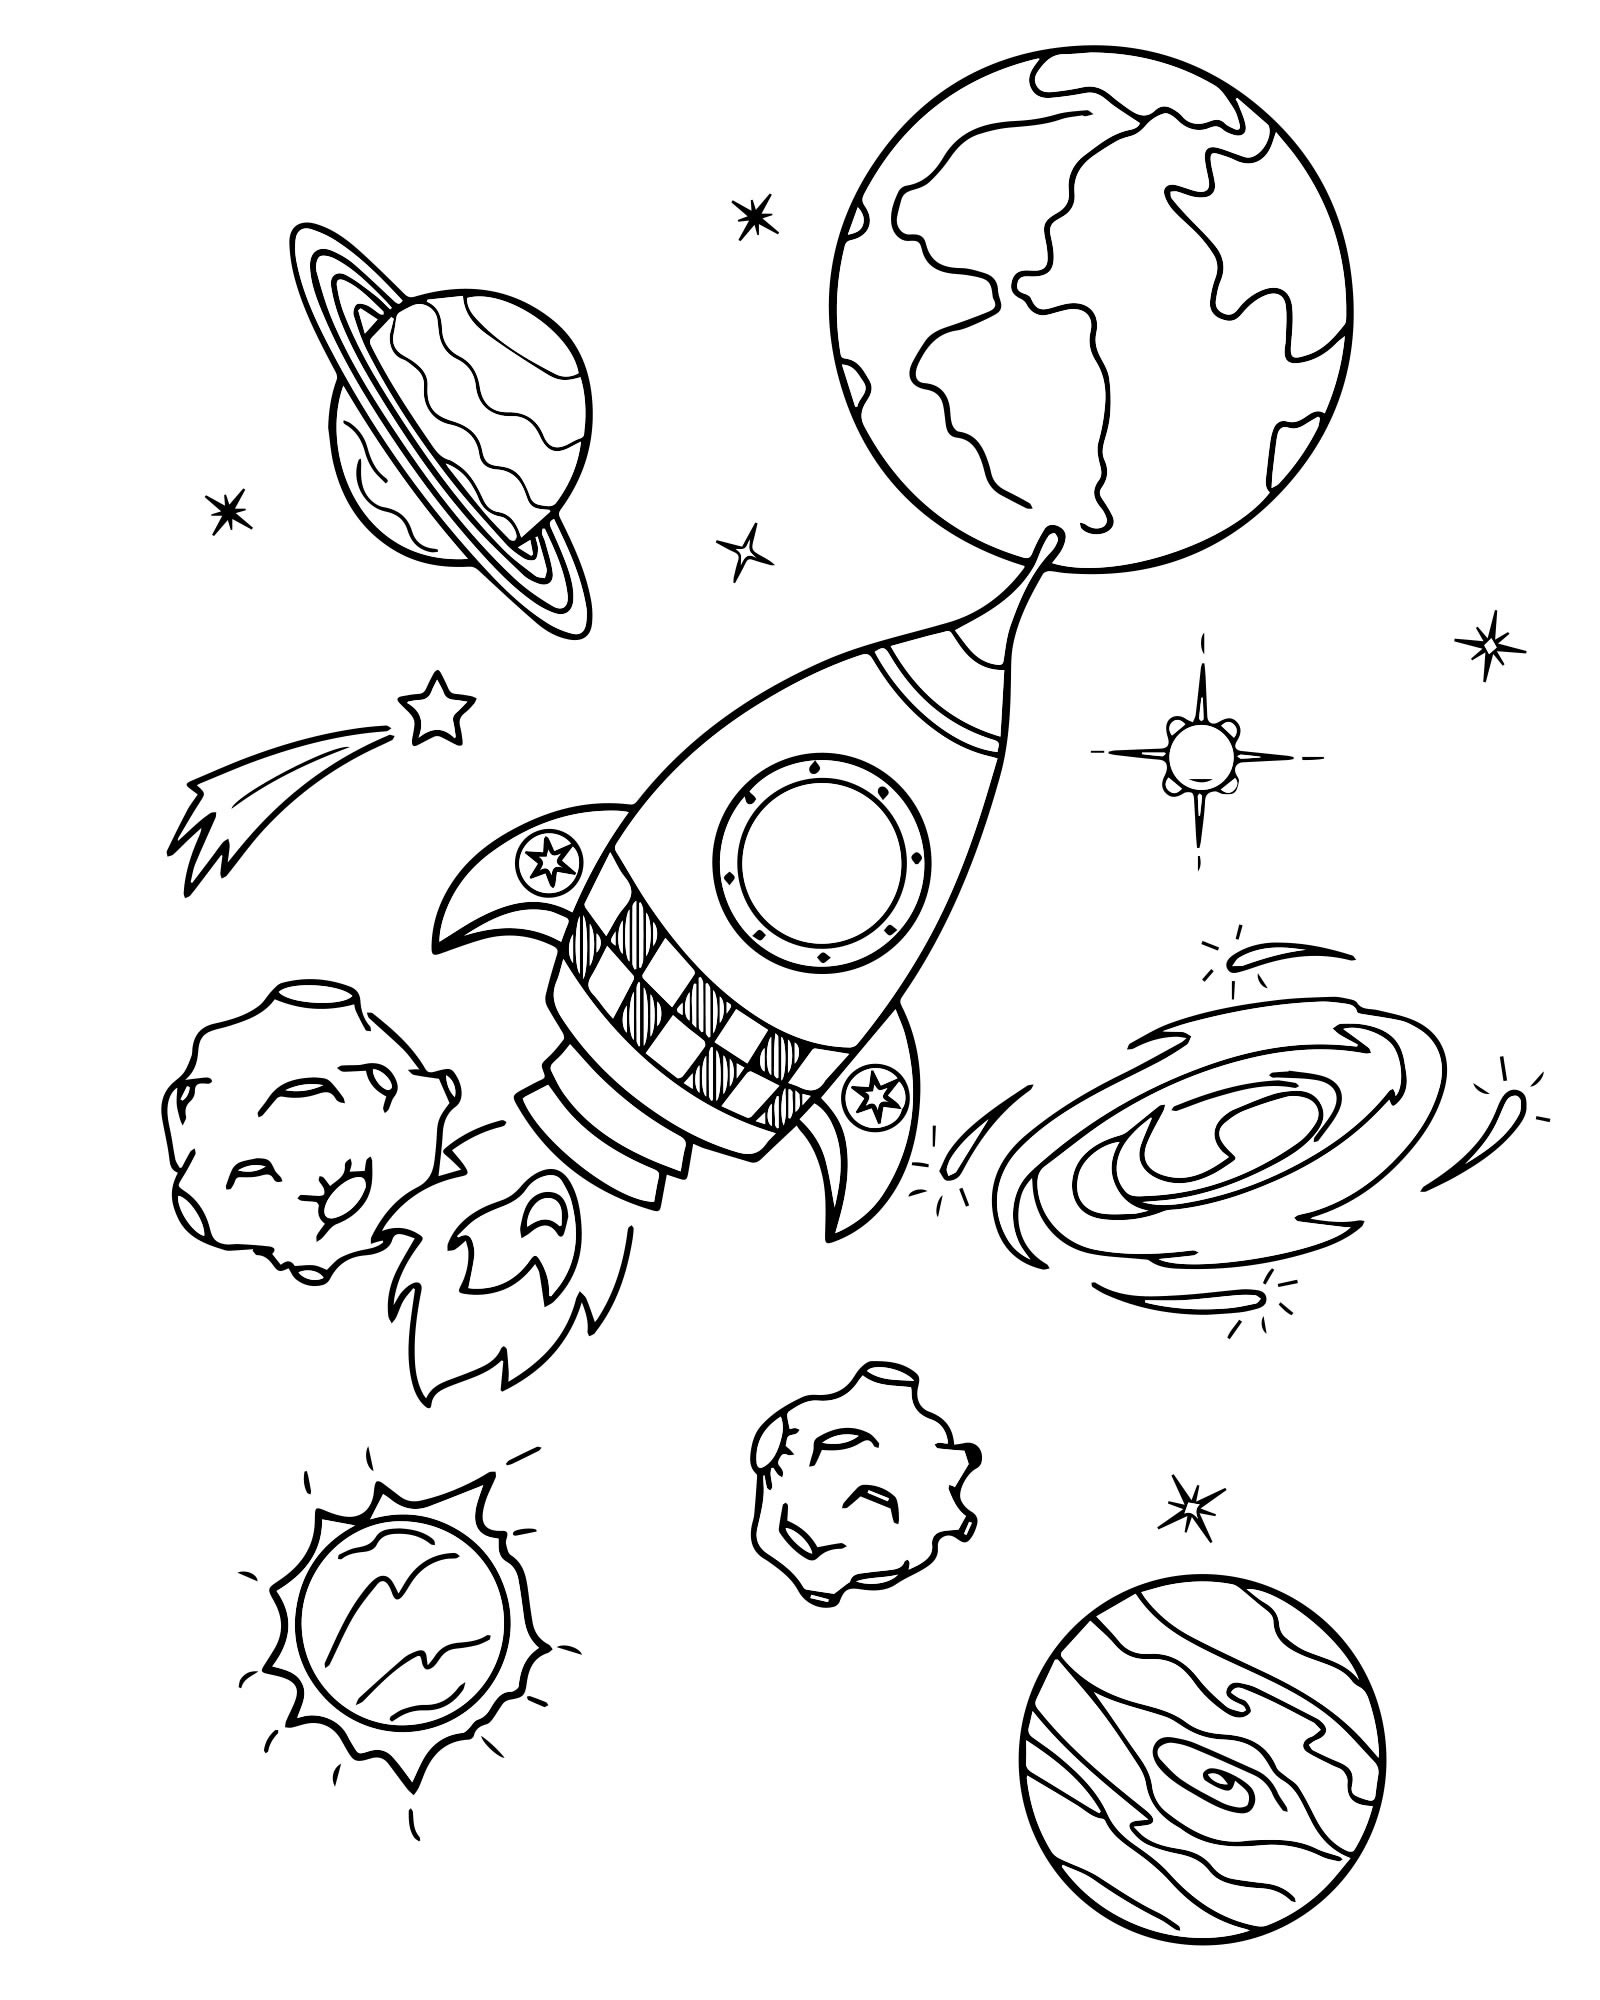 Раскраска космос и планеты. Космос раскраска для детей. Раскраска. В космосе. Раскраска космос и планеты для детей. Раскраска для малышей. Космос.